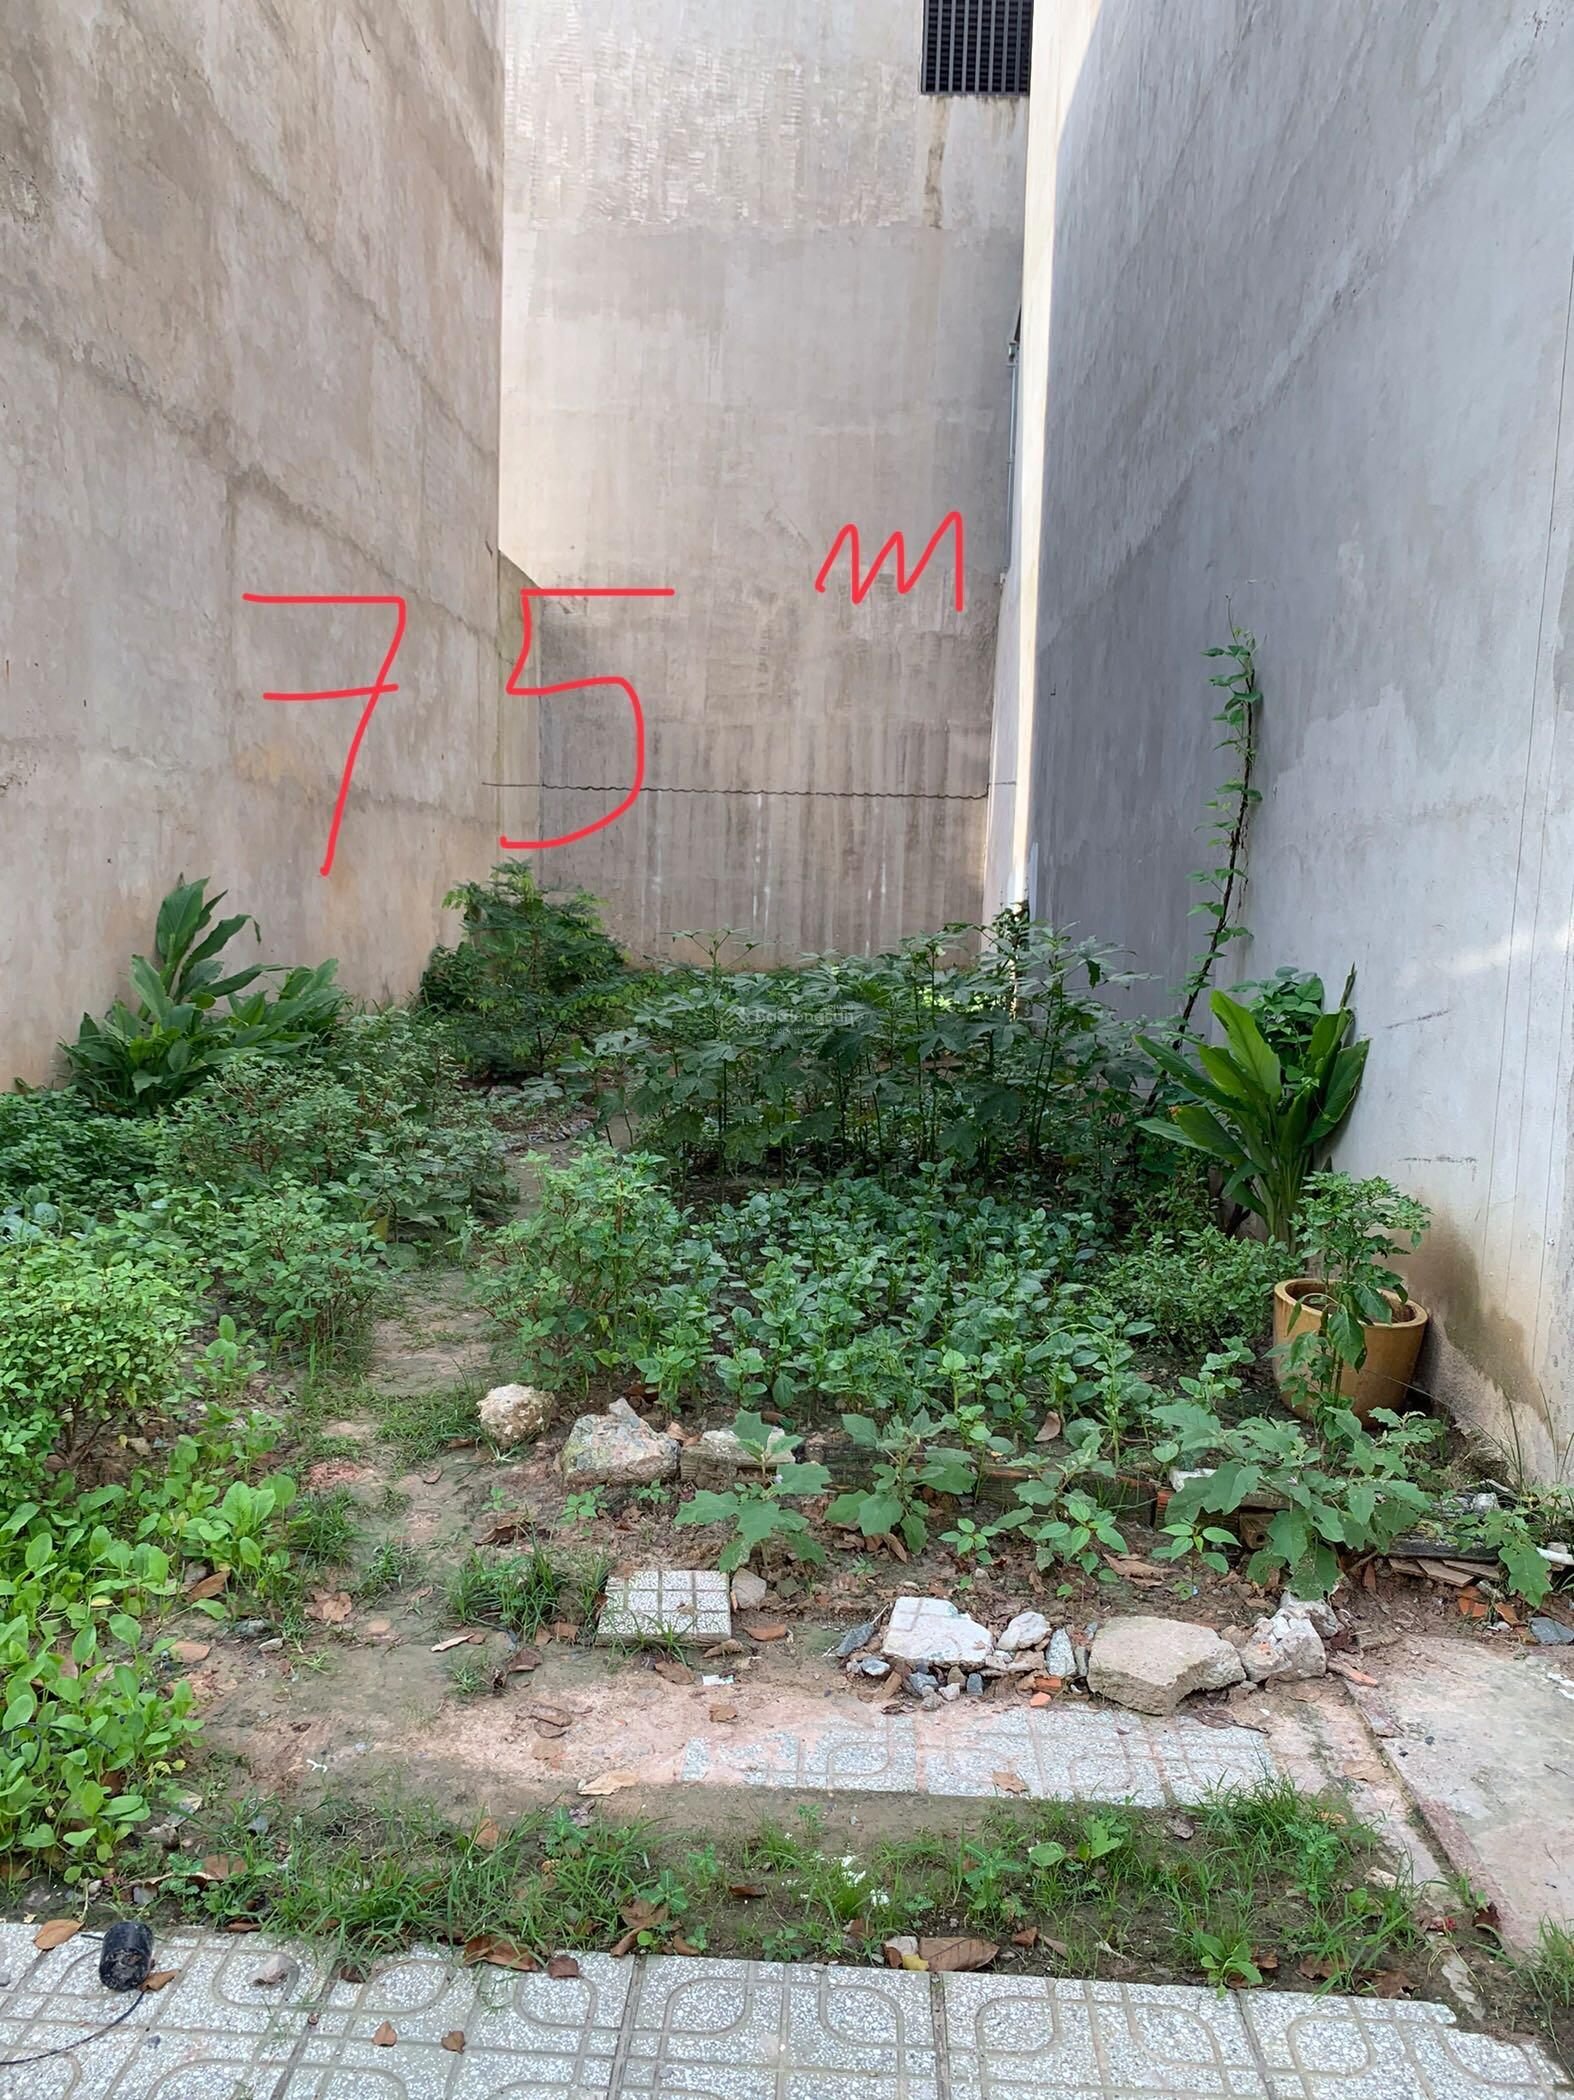 Chính chủ cần bán lô đất khu nhà ở An Phú Thuận An Bình Dương  5*16m vị trí đẹp - Ảnh 2